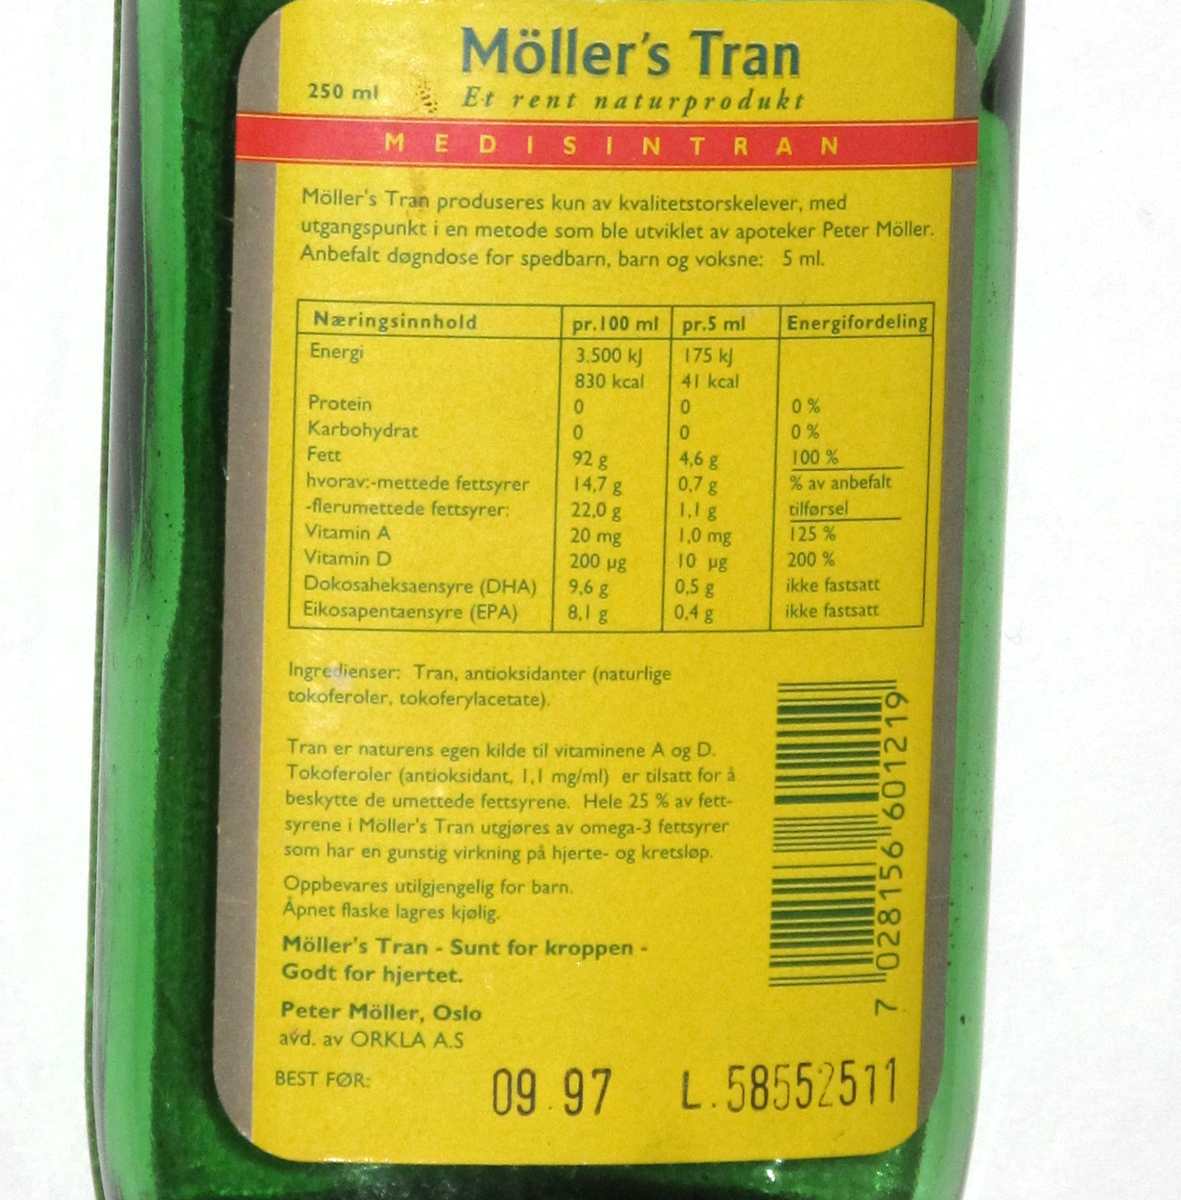 Flaske av grønnfarget glass, med gul etikett, til  tran. 250 ml.  Etikett med opplysninger om  innhold og oppbevaring, varemerke, utmerkelser og strekkode.